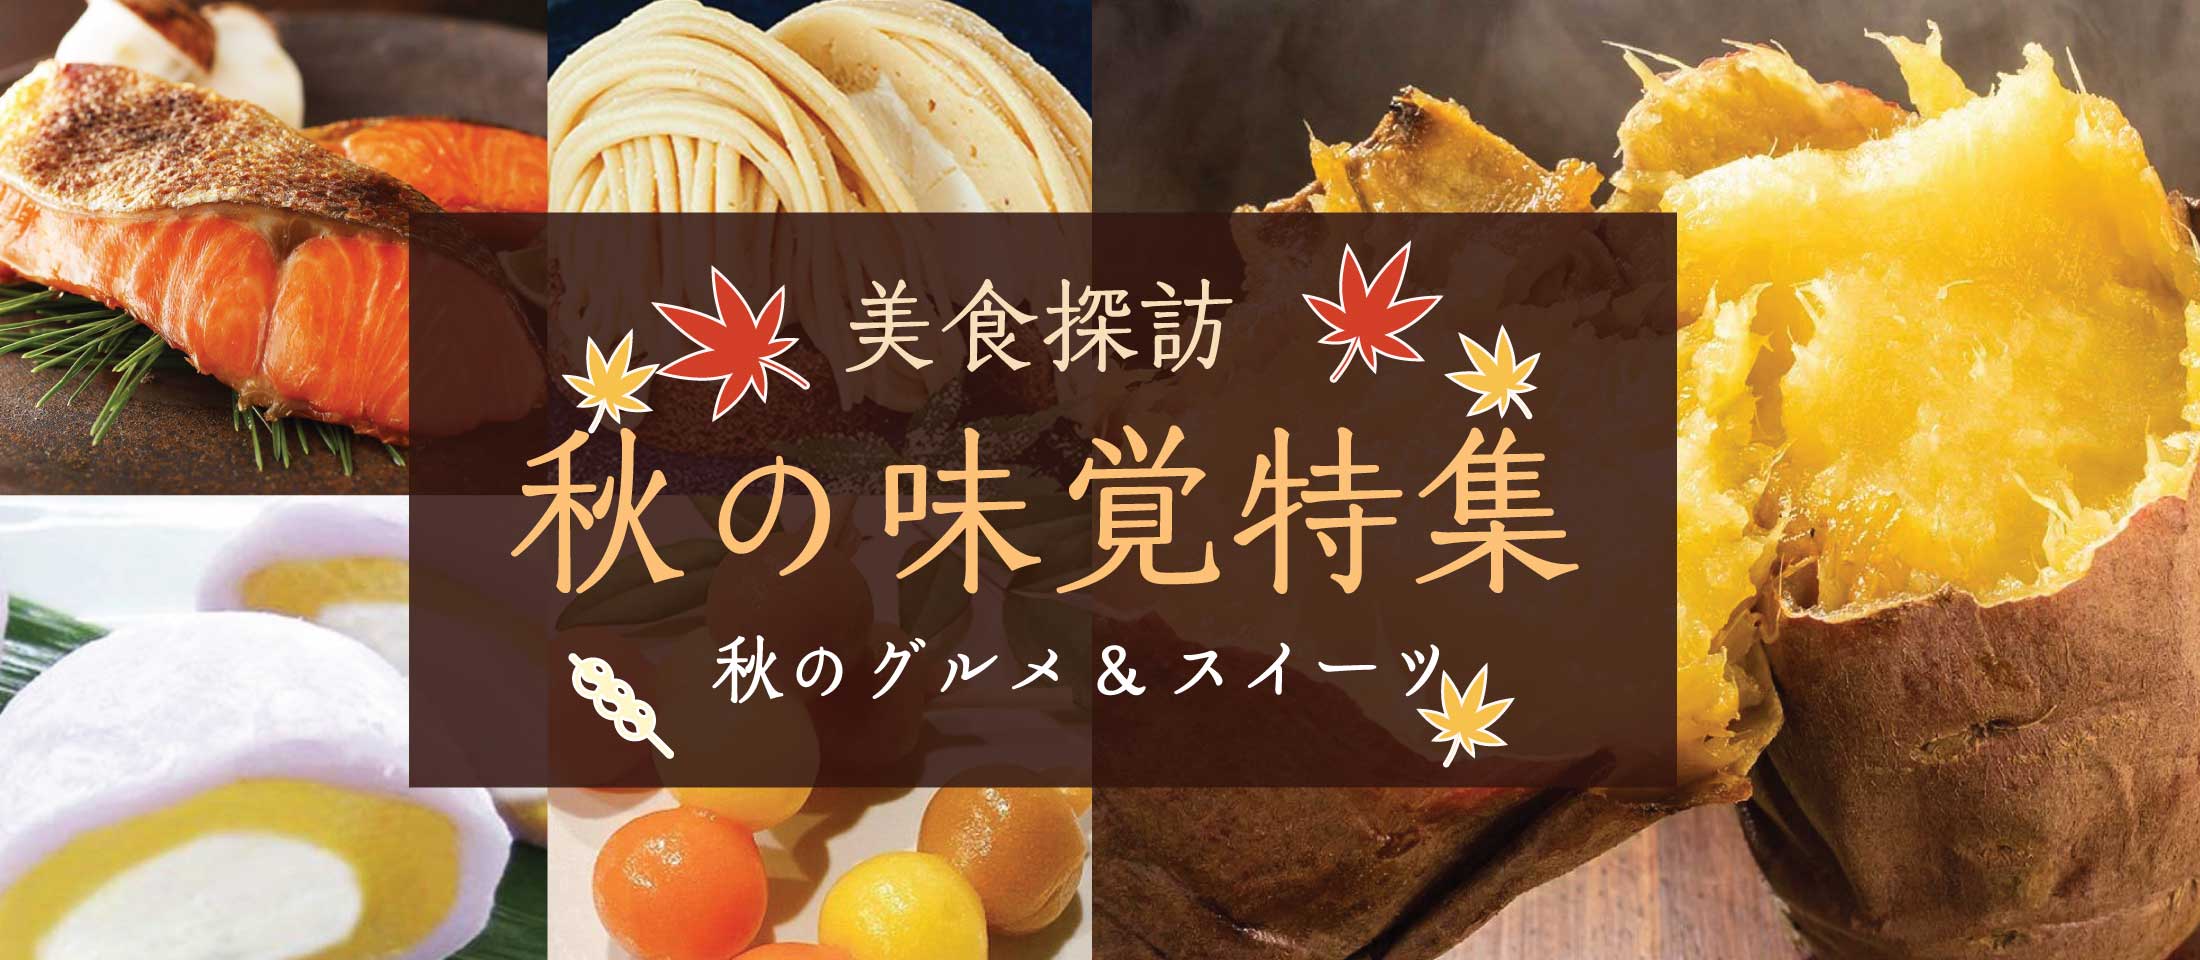 秋の味覚特集 業務用食品・冷凍食品通販 ナカヤマフーズオンライン